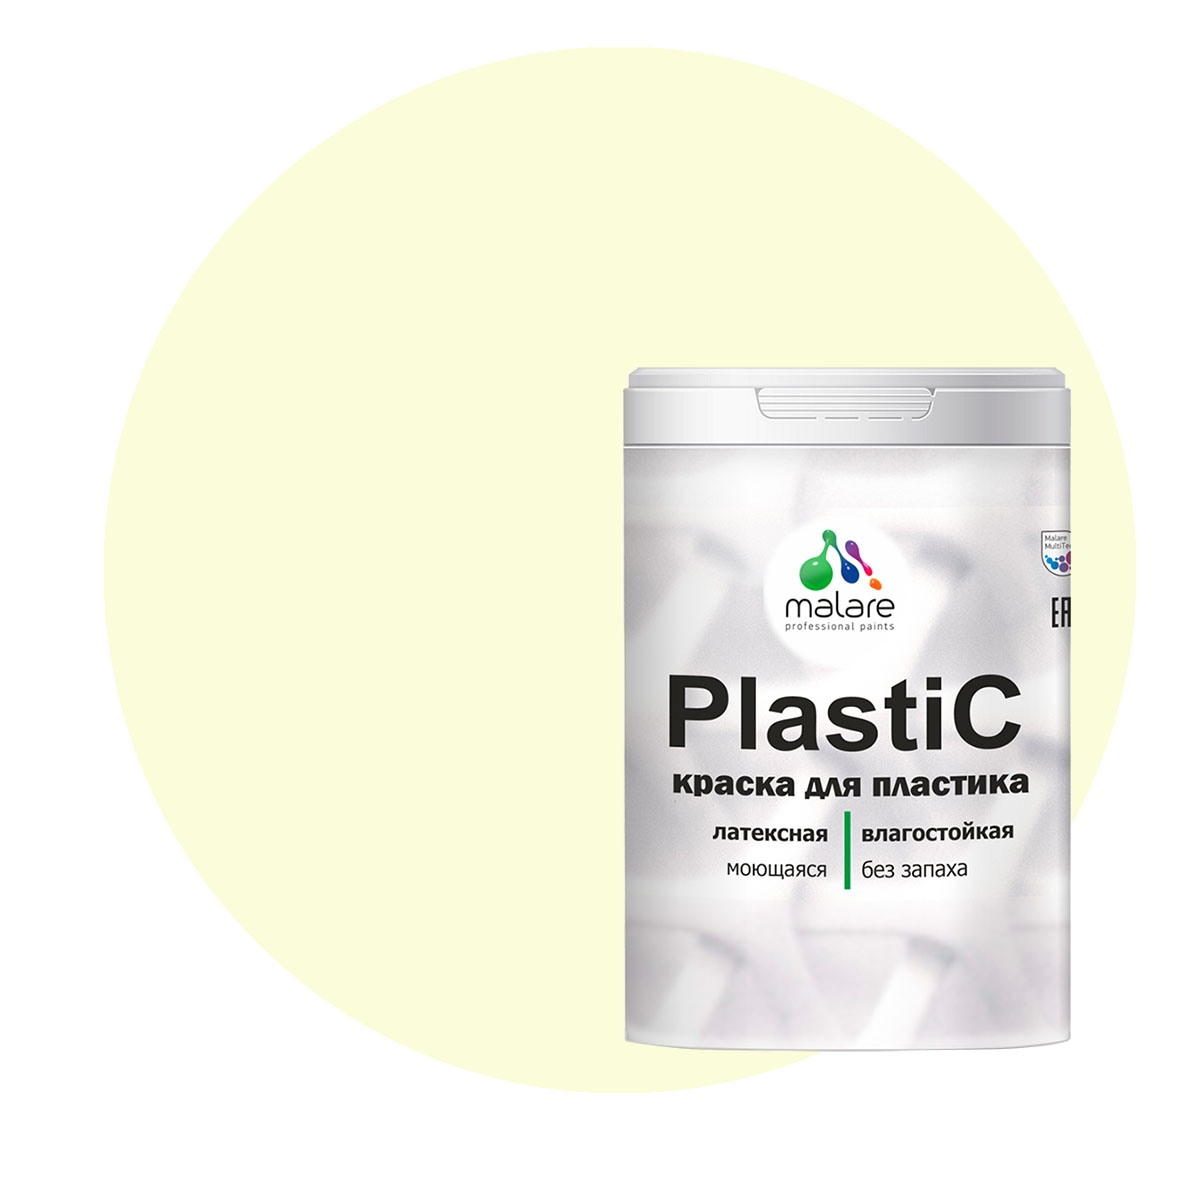 Краска Malare PlastiC для пластика, ПВХ, для сайдинга, слоновая кость 2 кг. краска malare plastic для пластика пвх для сайдинга слоновая кость 10 кг